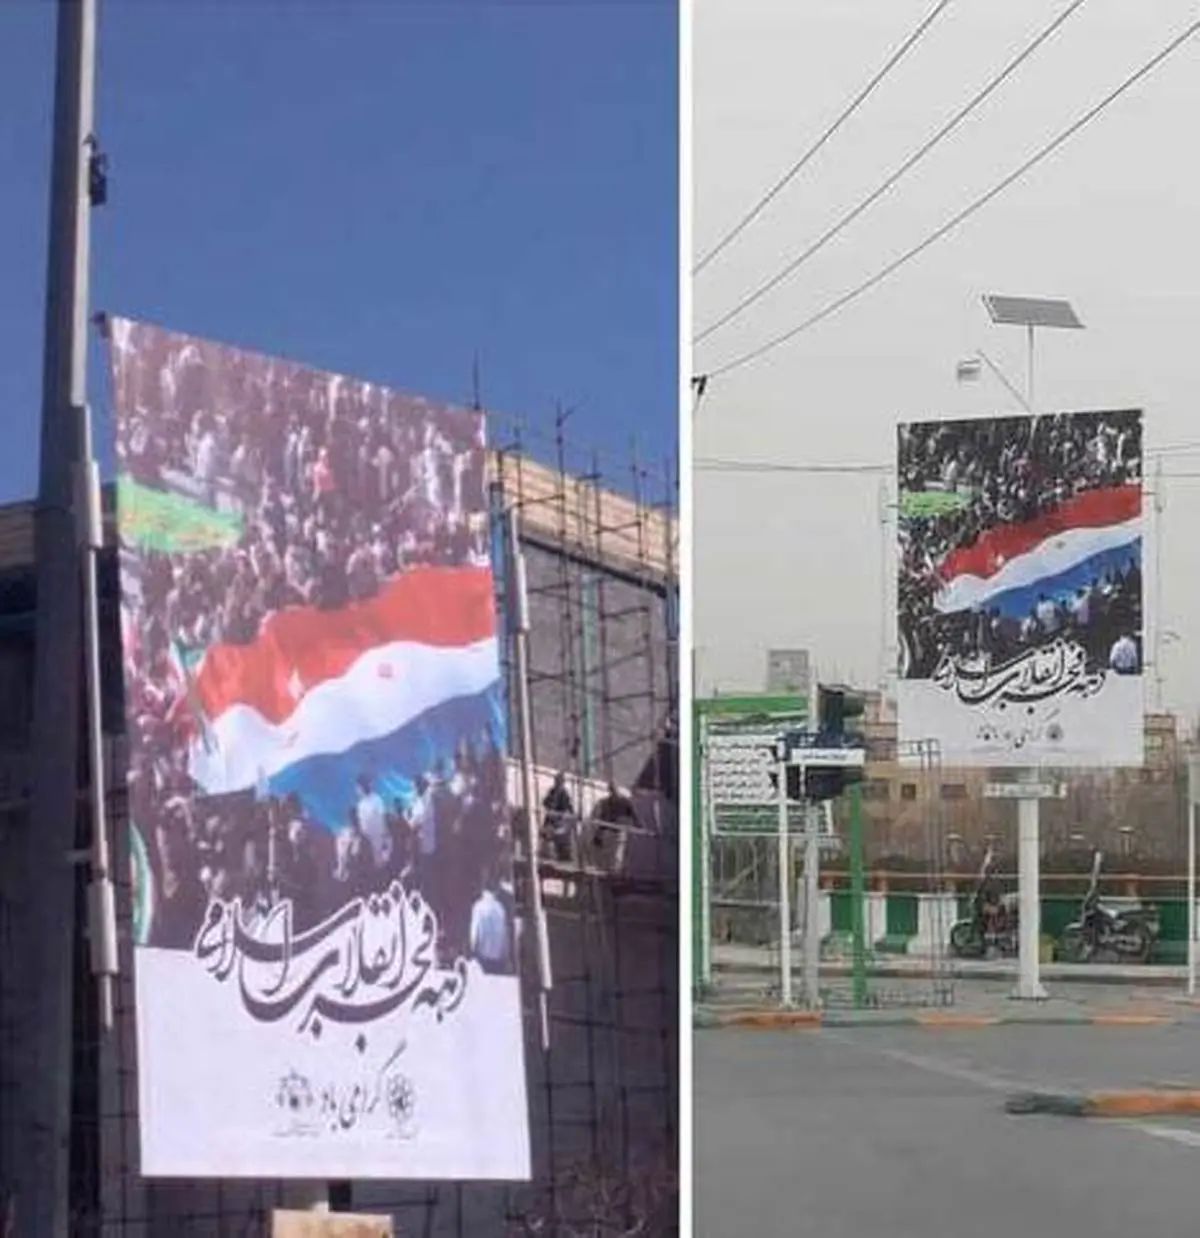 بنر عجیب شهرداری مشهد در دهه فجر| حاشیه های بنر عجیب شهرداری در تبلیغات شهری